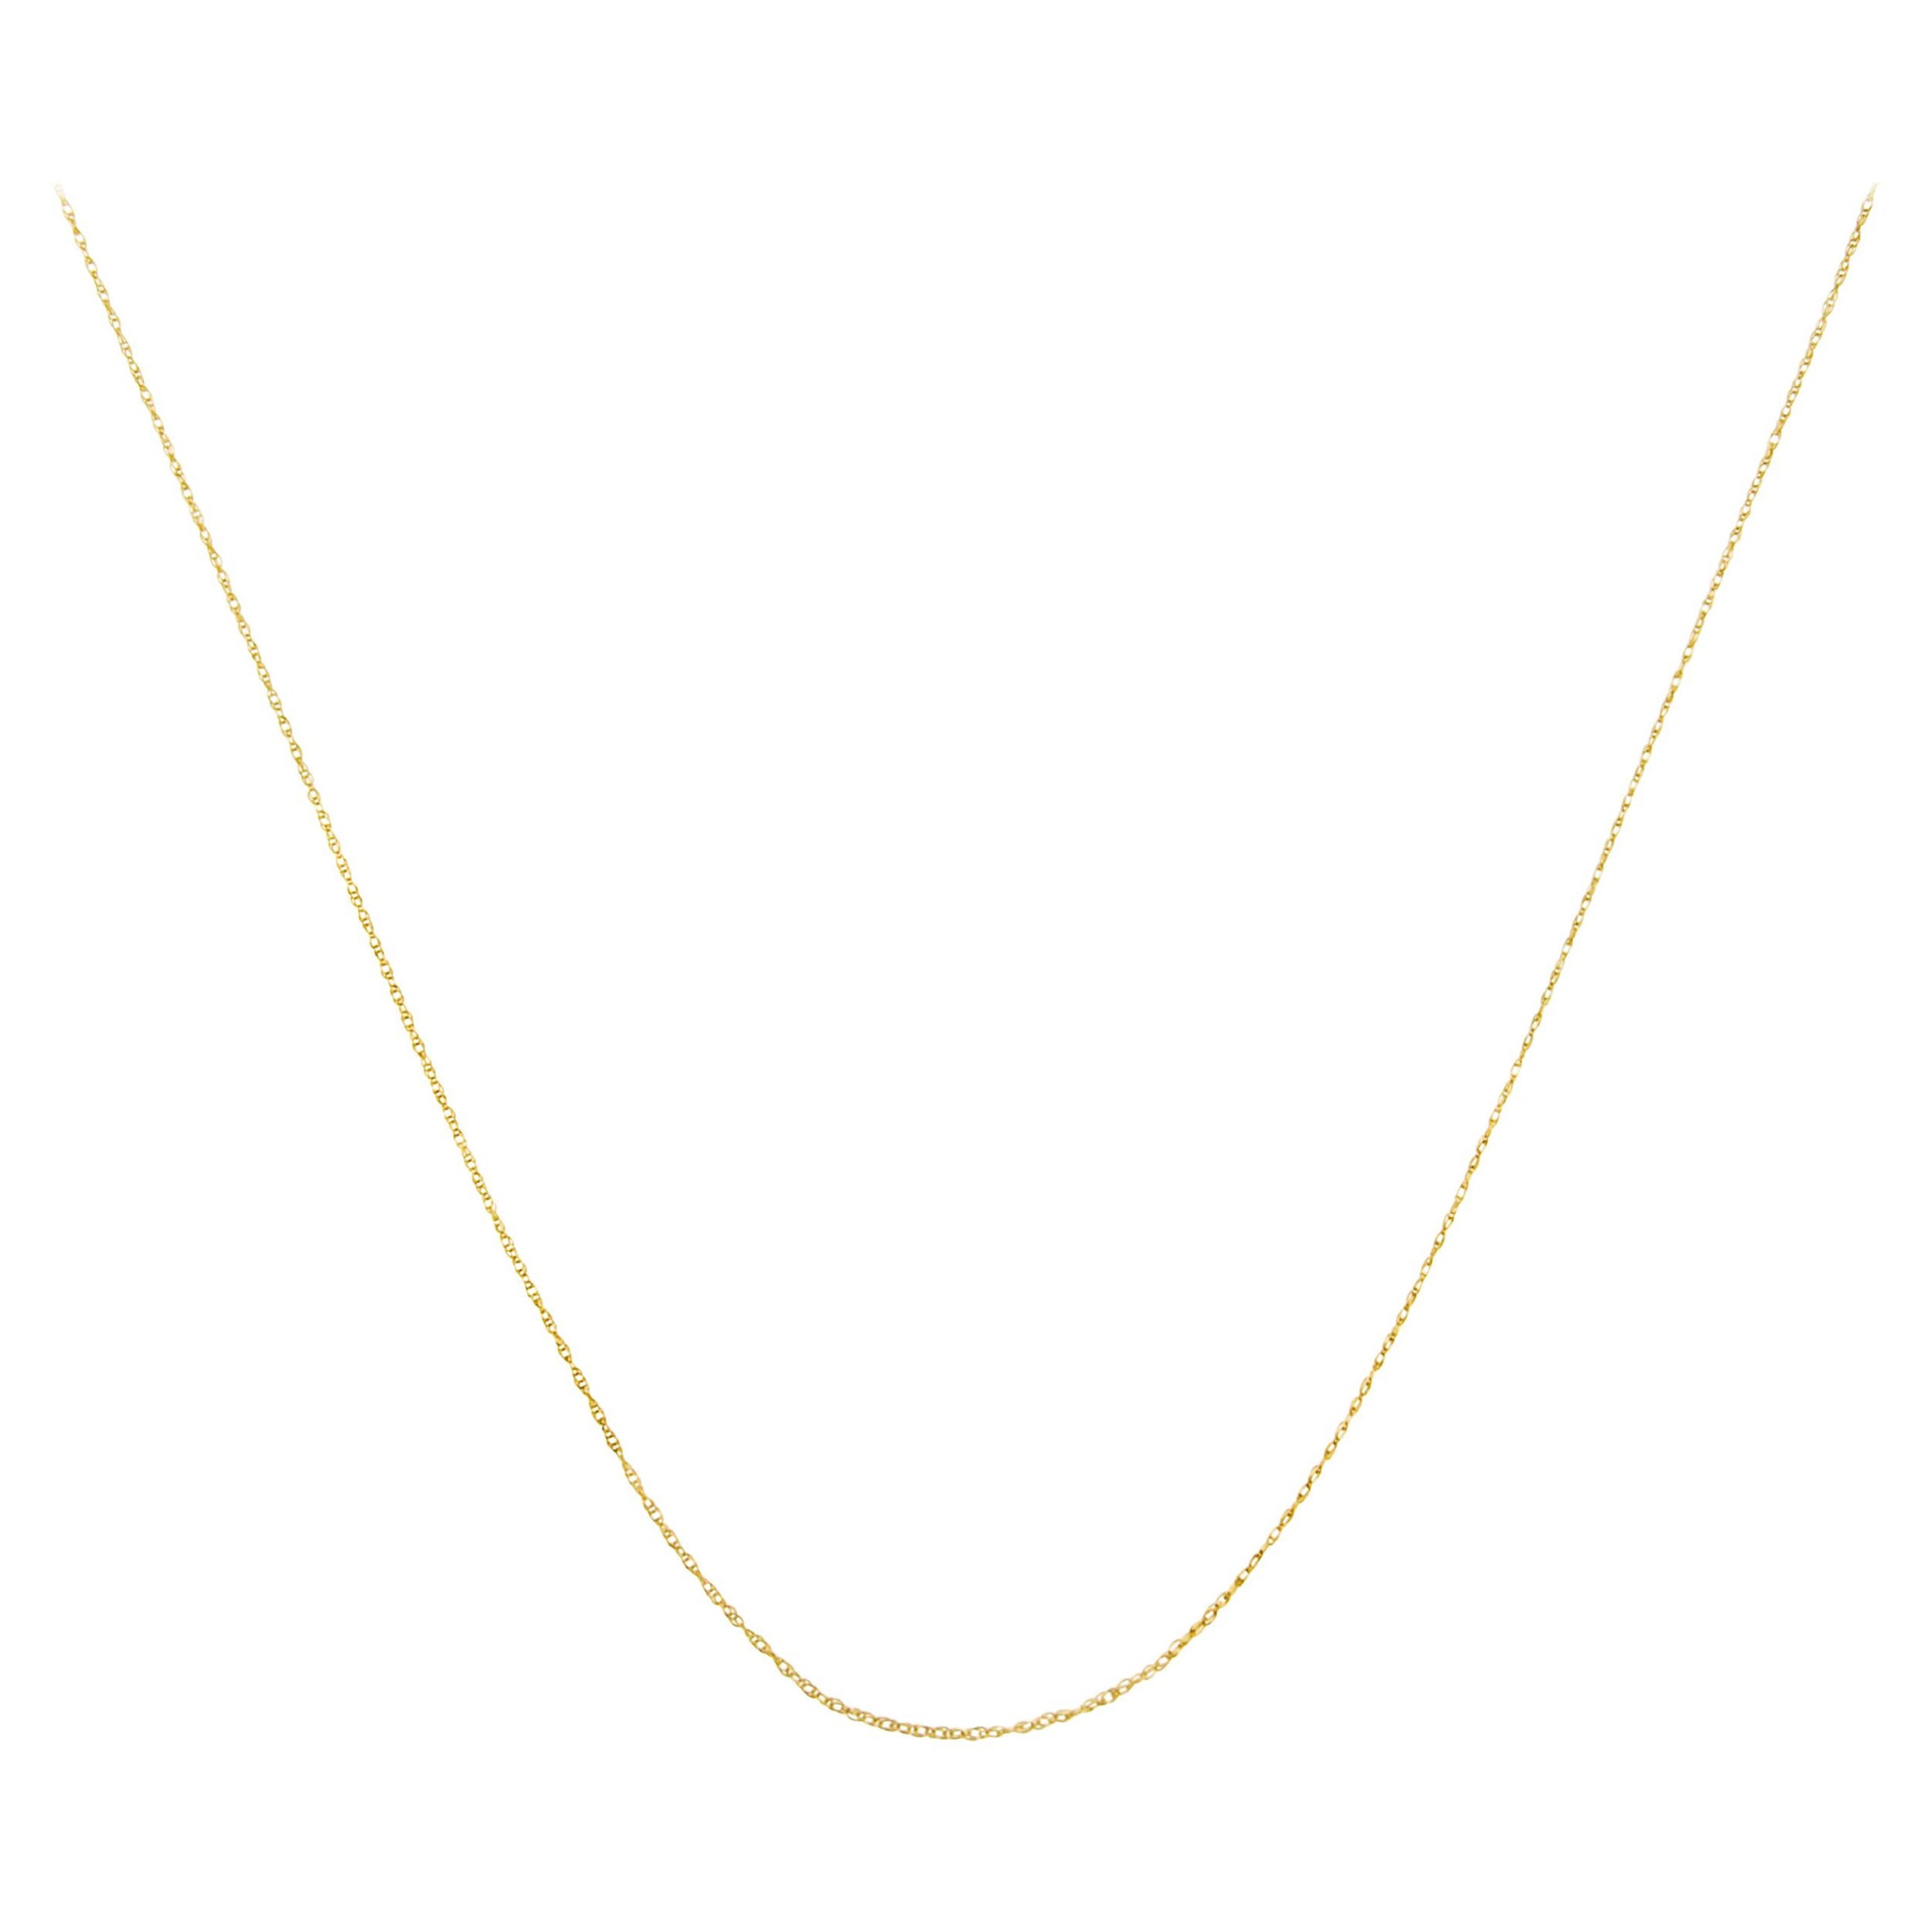 Collier unisexe en or jaune 10K, chaîne en corde fine et délicate